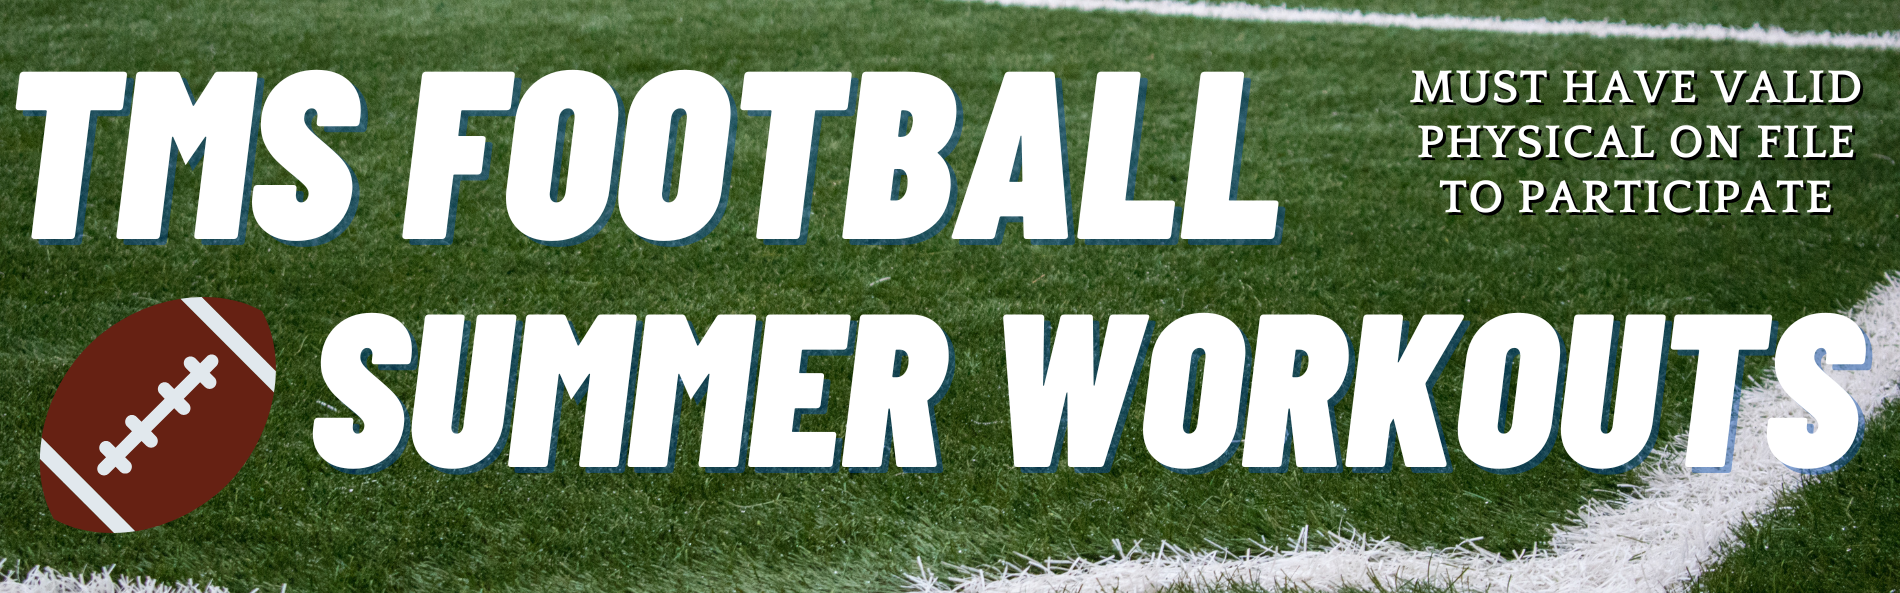 Football Summer Schedule